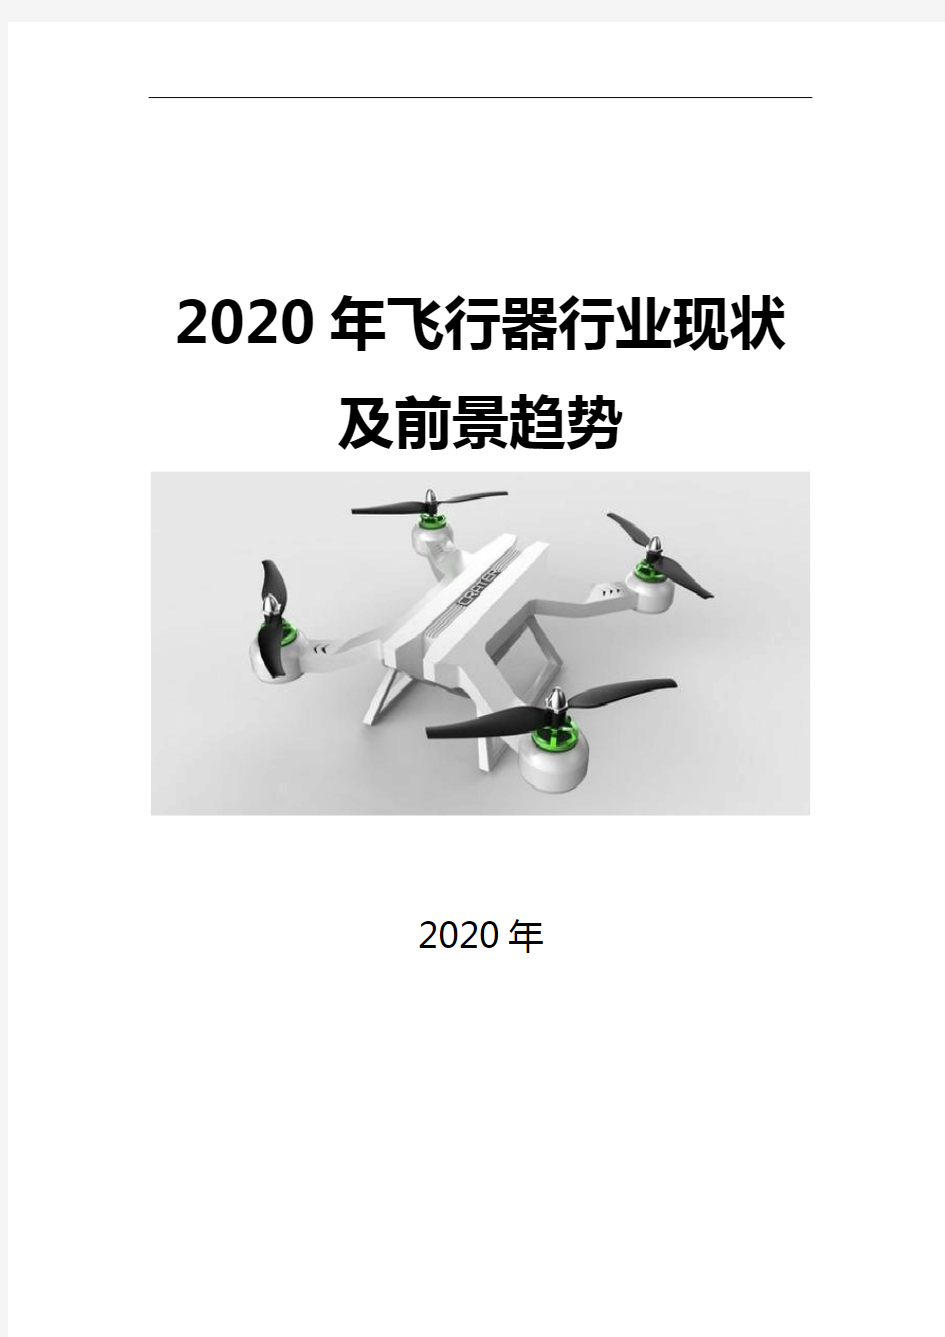 2020飞行器行业现状及前景趋势